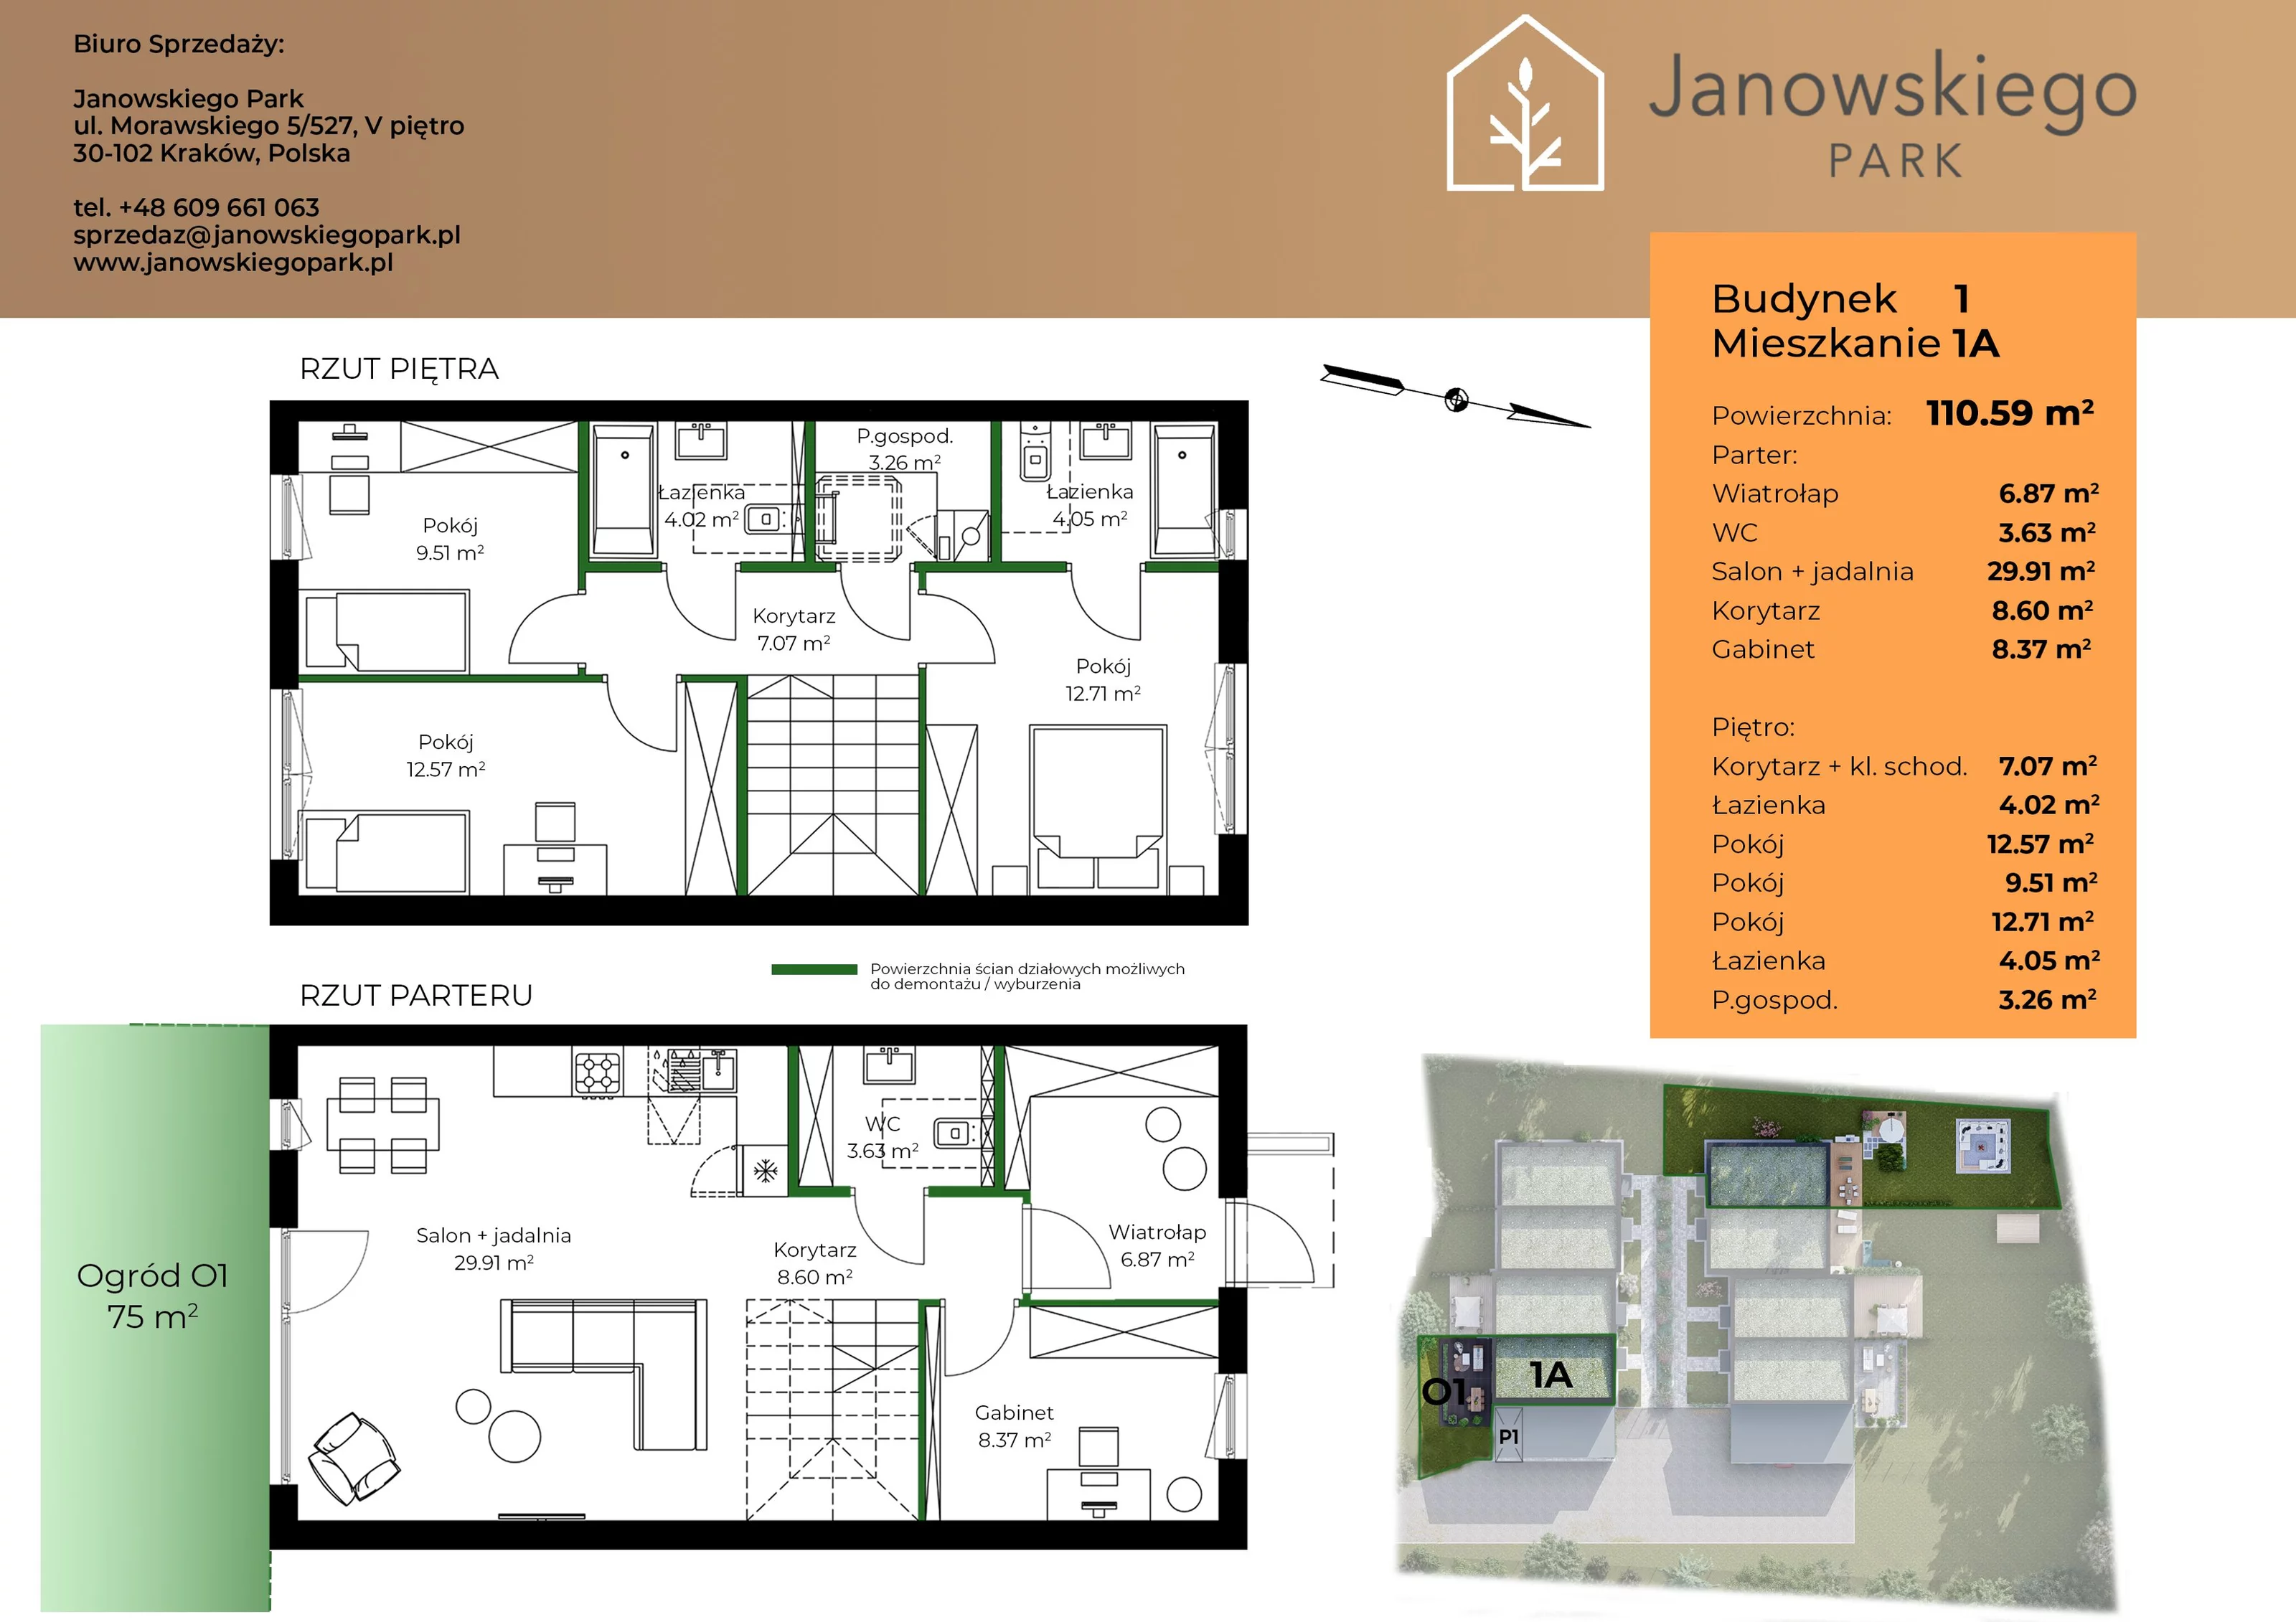 Mieszkanie 110,59 m², parter, oferta nr B1-1A, Janowskiego Park, Kraków, Swoszowice, Kliny Borkowskie, ul. Jana Janowskiego